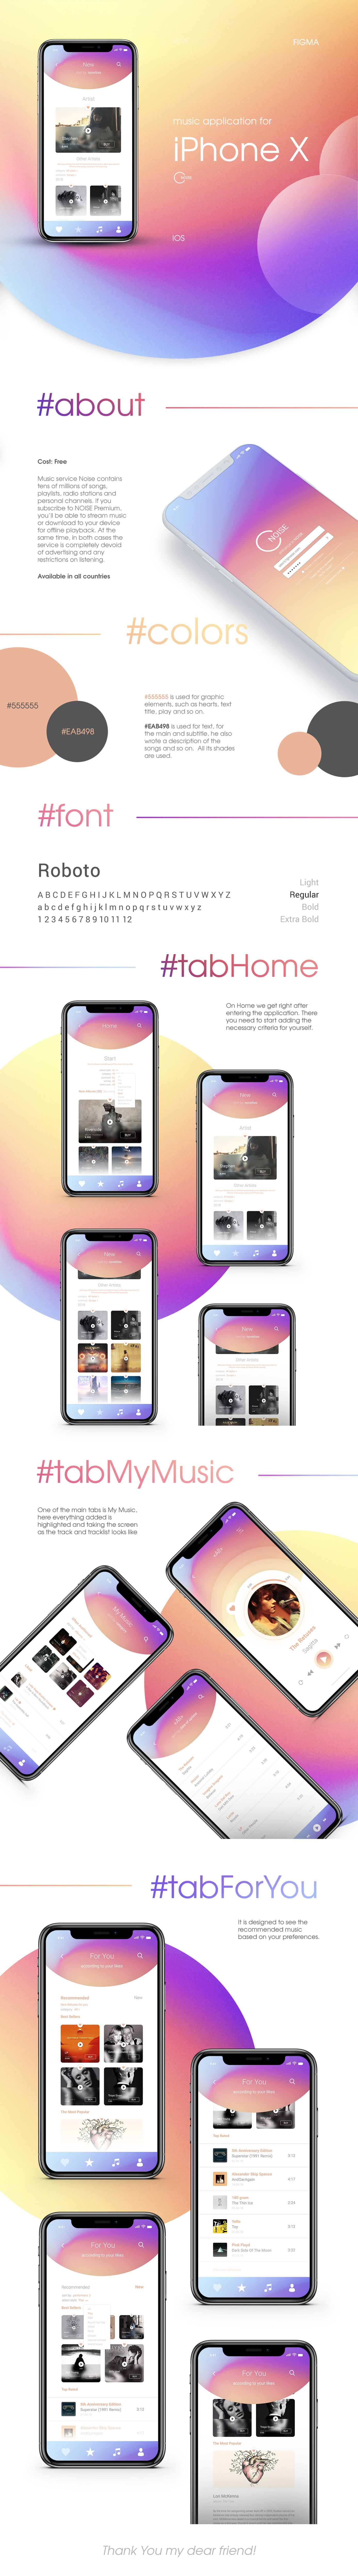 design iphone ios iphone attachment music app iphone app Music Player iphonex iphone design Figma